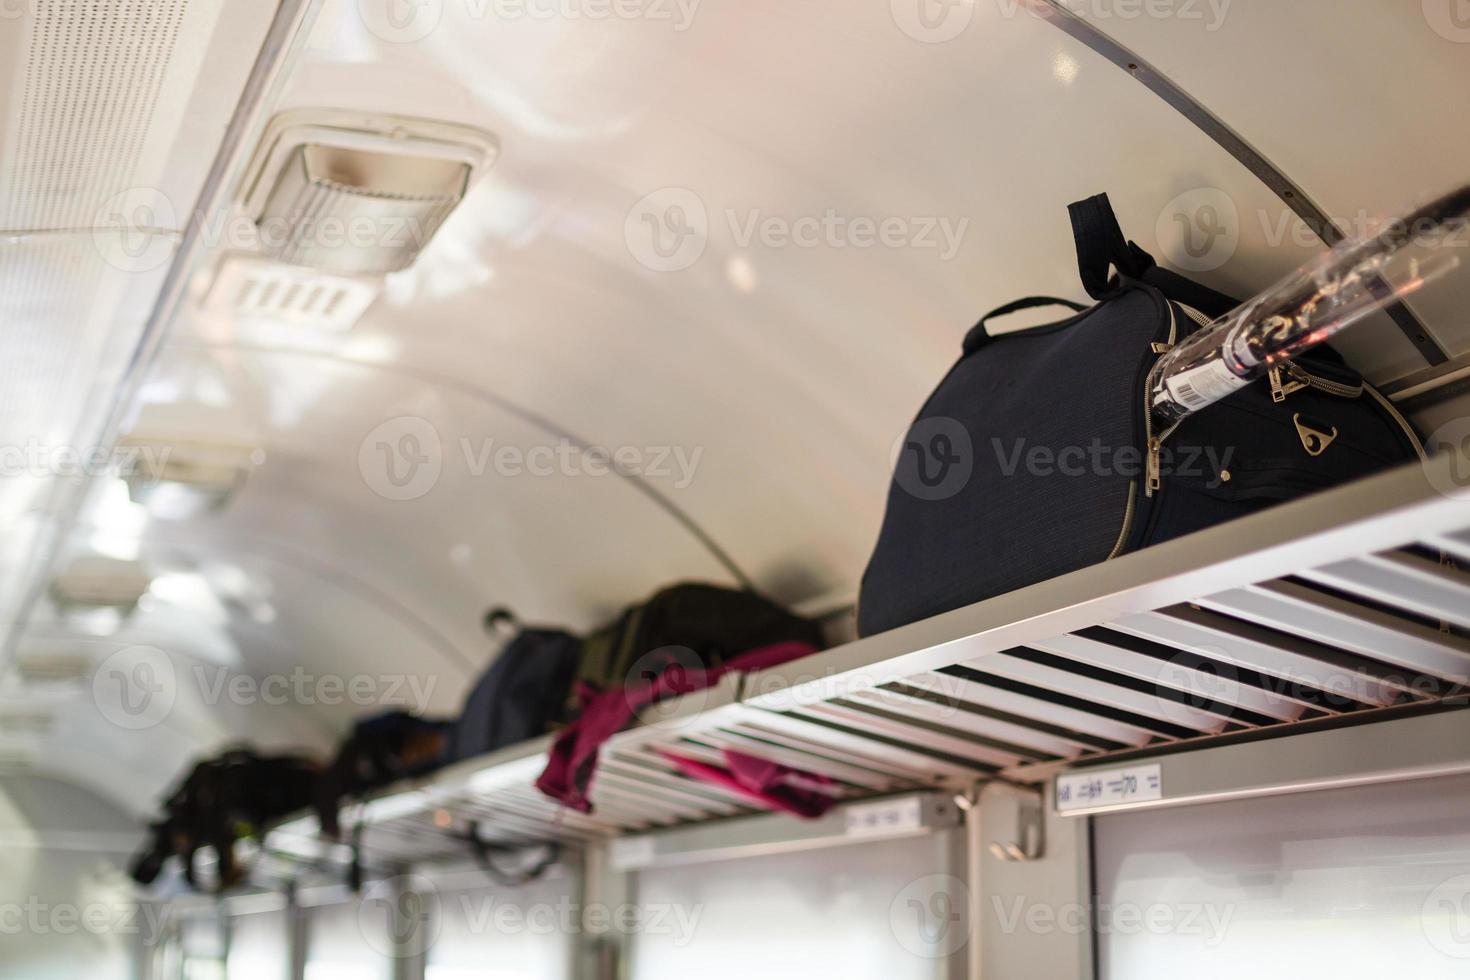 três assentos vazios adjacentes no trem europeu moderno com bagagem na prateleira, orientação vertical do retrato. férias de férias, turismo, viagens, interior de trem moderno ou conceito de transporte ferroviário foto